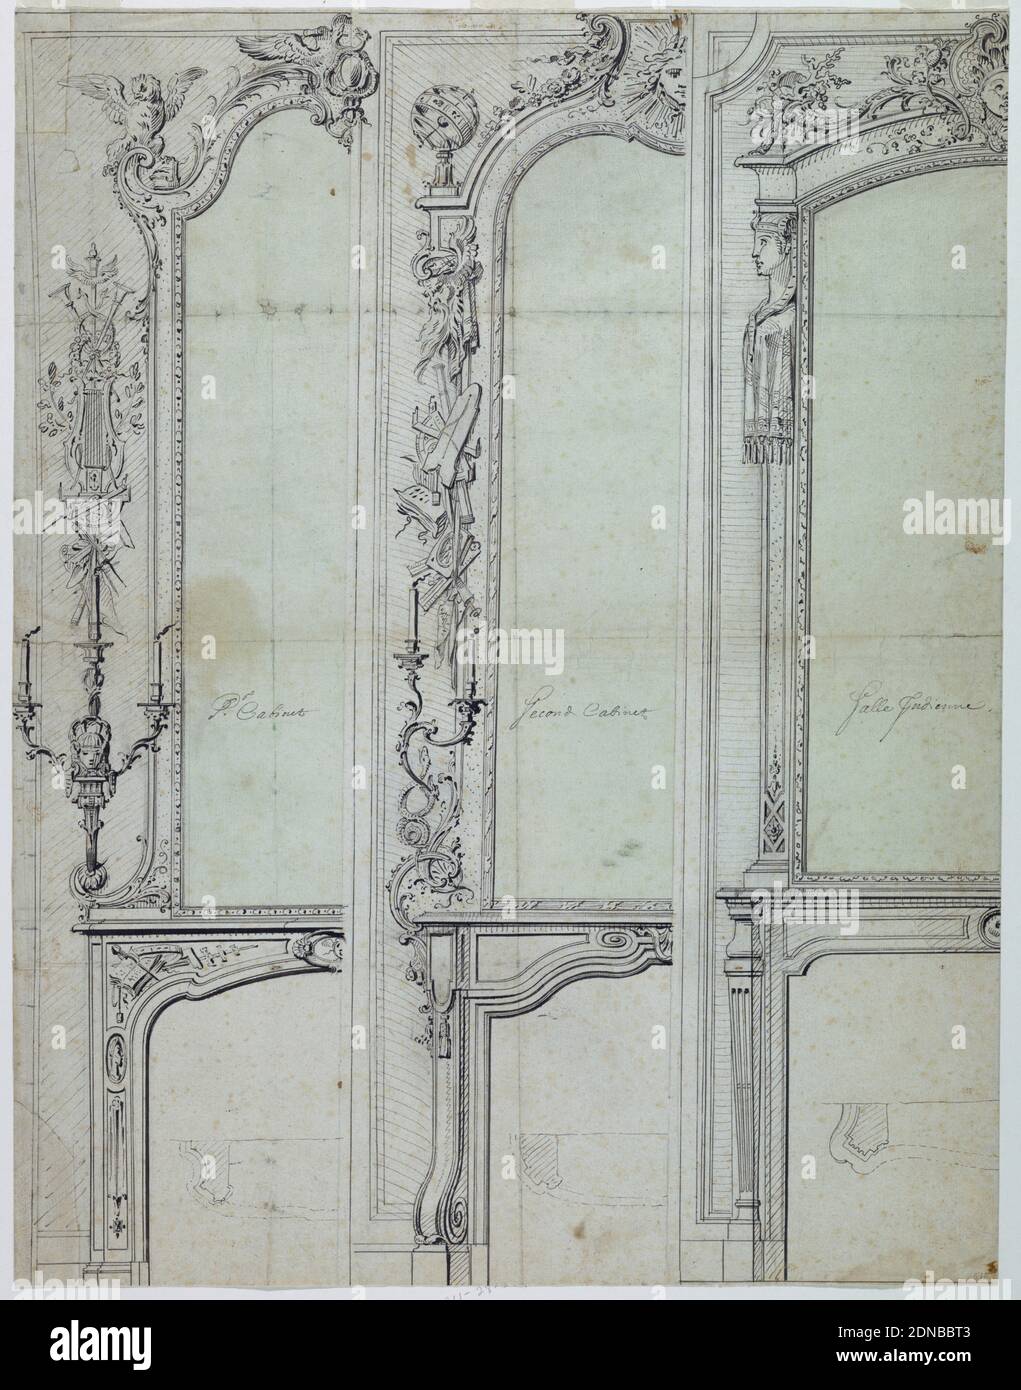 Disegni per un Mantelpieces, Gilles-Marie Oppenord, francese, 1672–1742, penna e inchiostro nero, lavaggio verde chiaro, su gesso nero, tre metà sinistra di una mantella. A sinistra, 'pr. Cabinet' include un paio di serpenti prima di un'escutteone alato in alto al centro, un'aquila, in alto a sinistra. Una candela nel pannello a parete. Al centro, 'secondo armadietto' include un centro della parte superiore della superficie solare. Staffa per candele con due candele supportate da due serpenti e simboli scientifici adornano il pannello a parete. A destra, 'alle Jud'enne' comprende un pilaster con un busto di una donna con un diadema e uno scialle., Francia, 1720, disegno Foto Stock